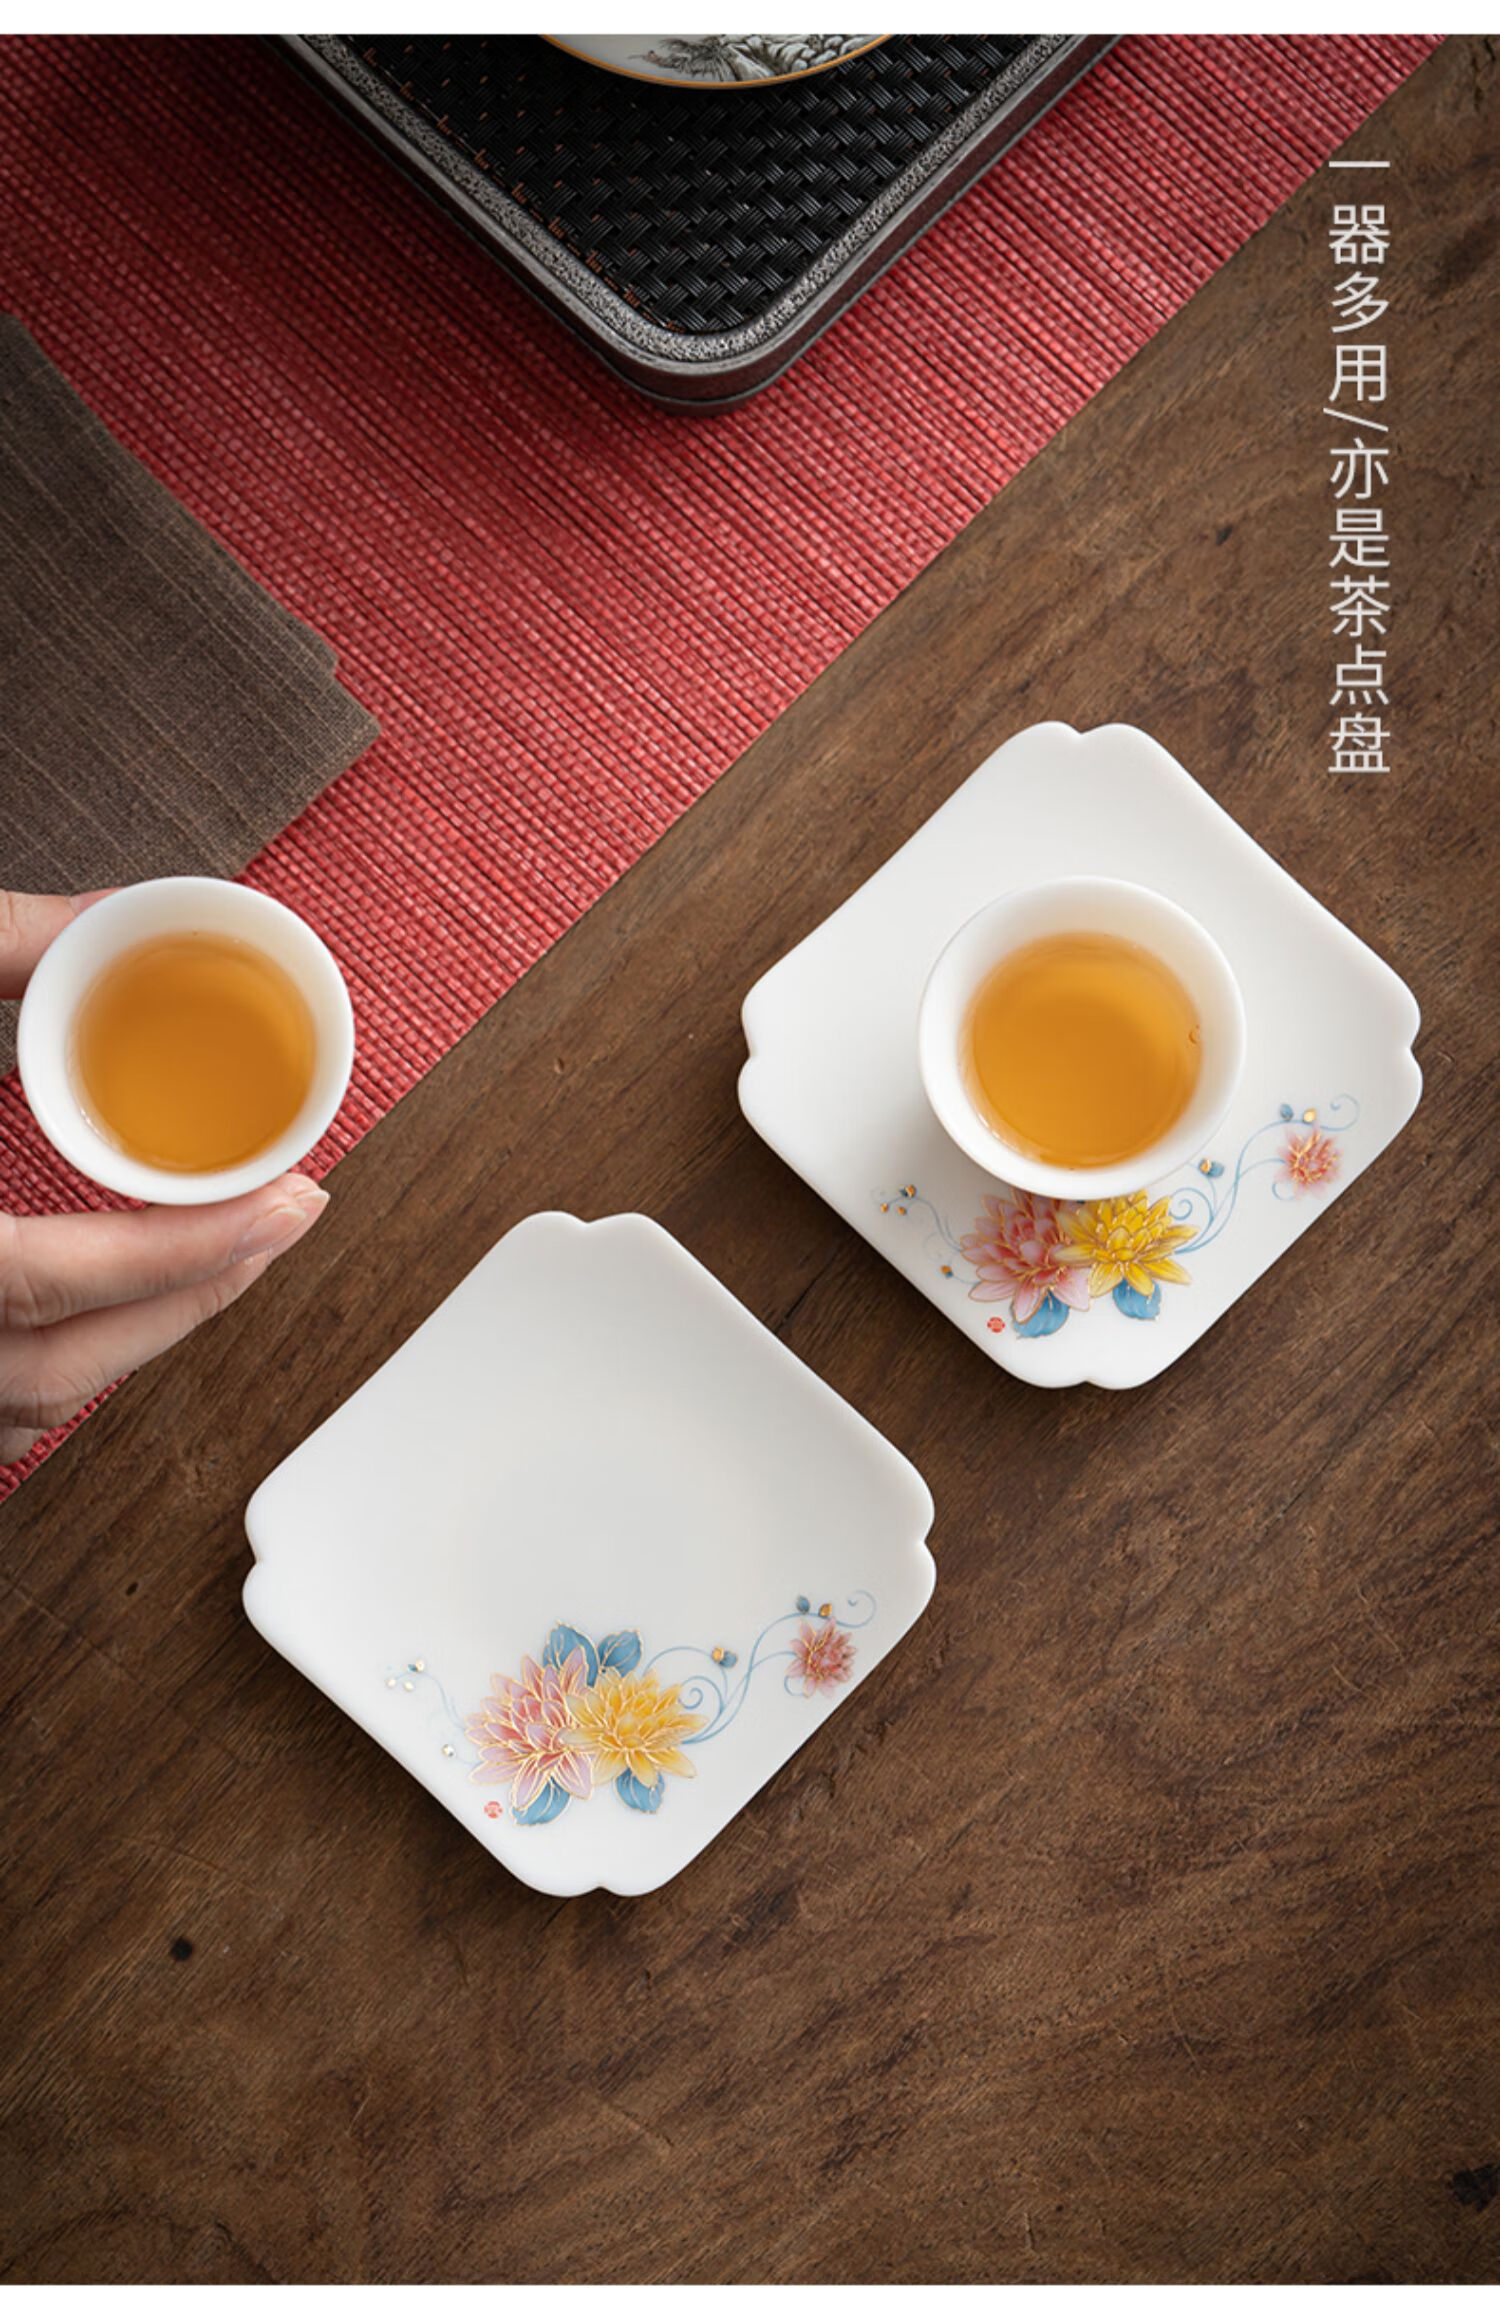 茗山堂 白瓷羊脂玉杯垫四方茶垫茶杯托陶瓷家用功夫茶具干泡碟配件